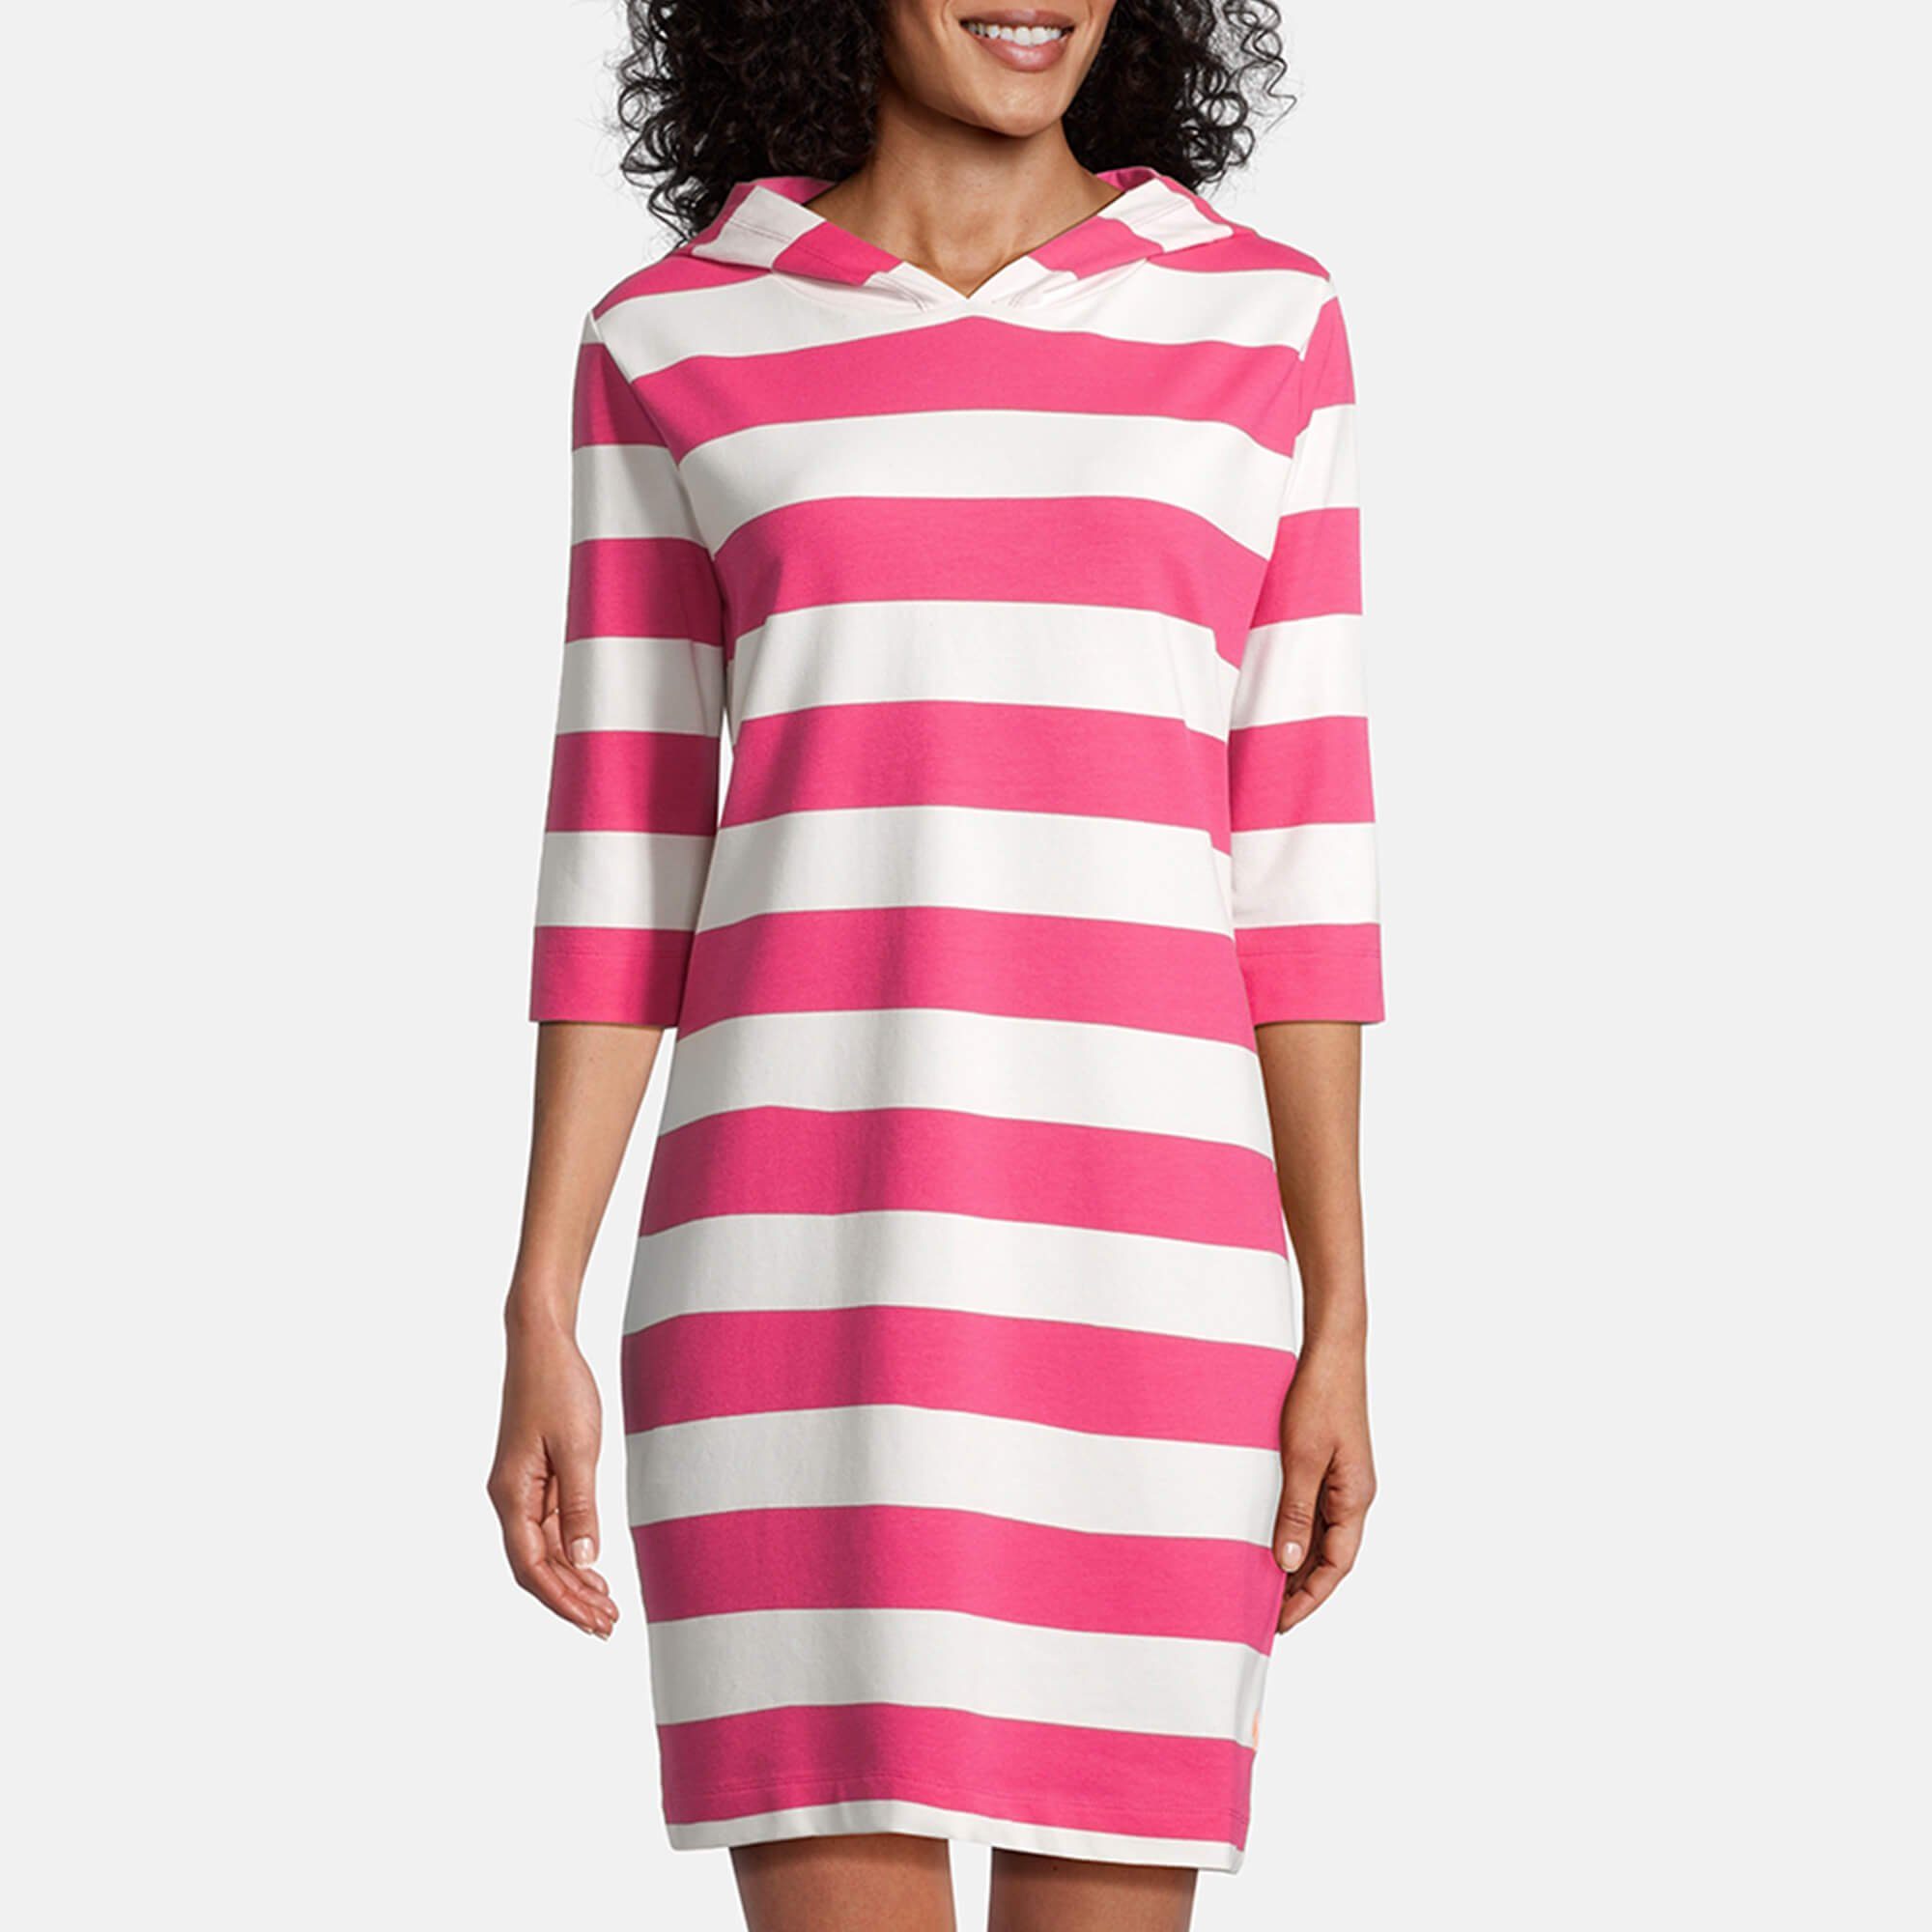 salzhaut Shirtkleid Damen Hoodie-Kleid Kapuzenkleid pink offwhite 3/4-Arm Block-Streifen Löövstick 